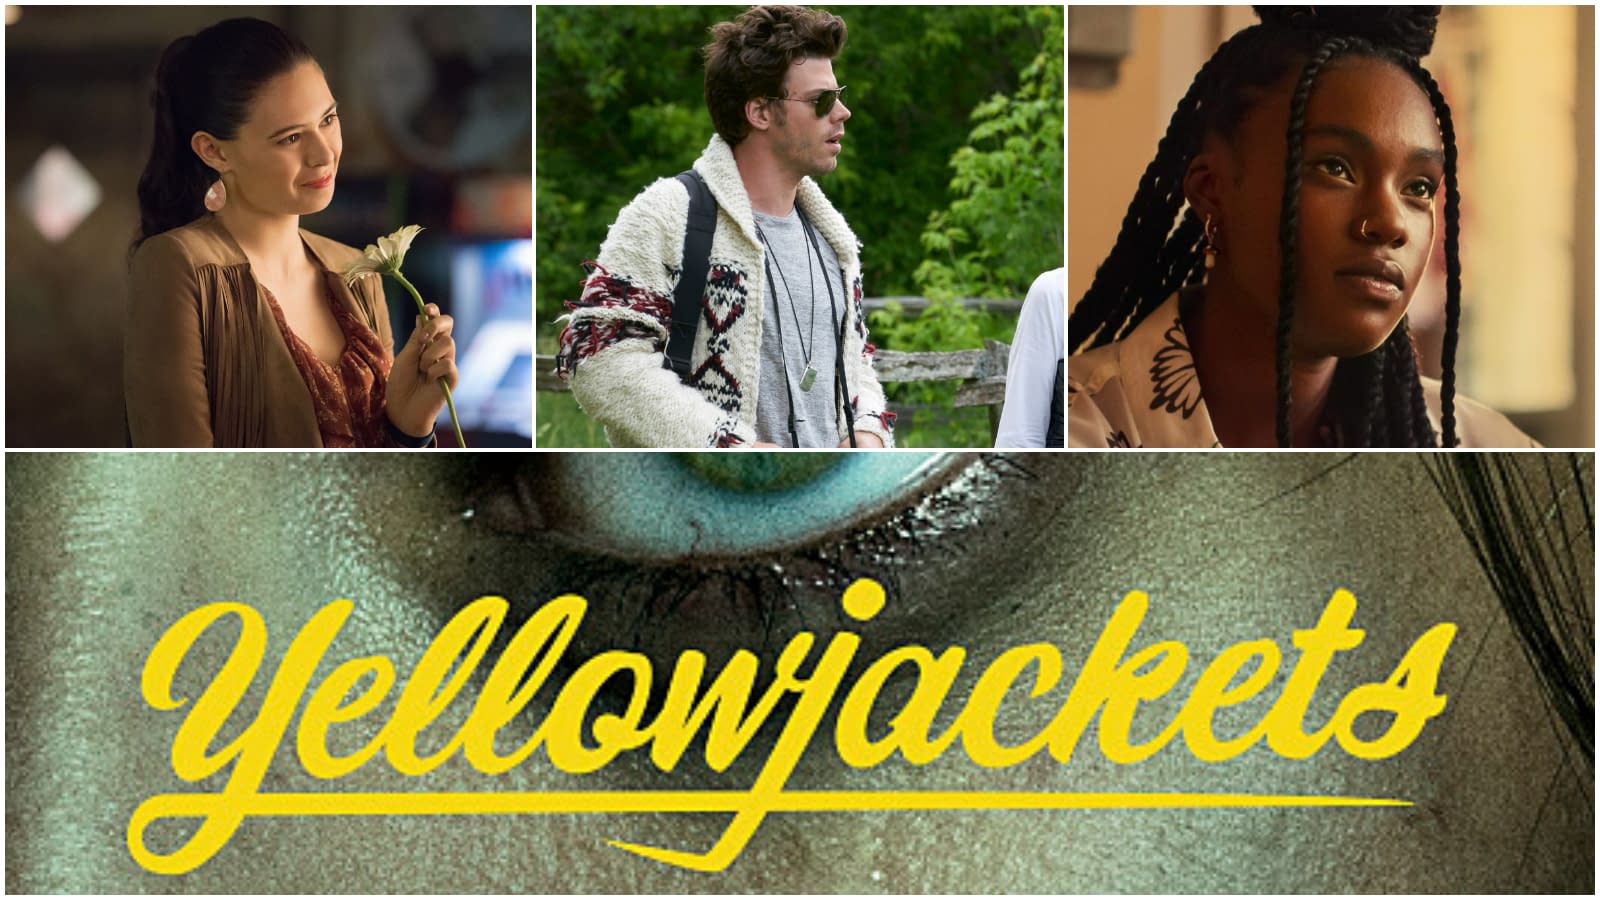 Yellowjackets já está disponível na Netflix! Conheça a série